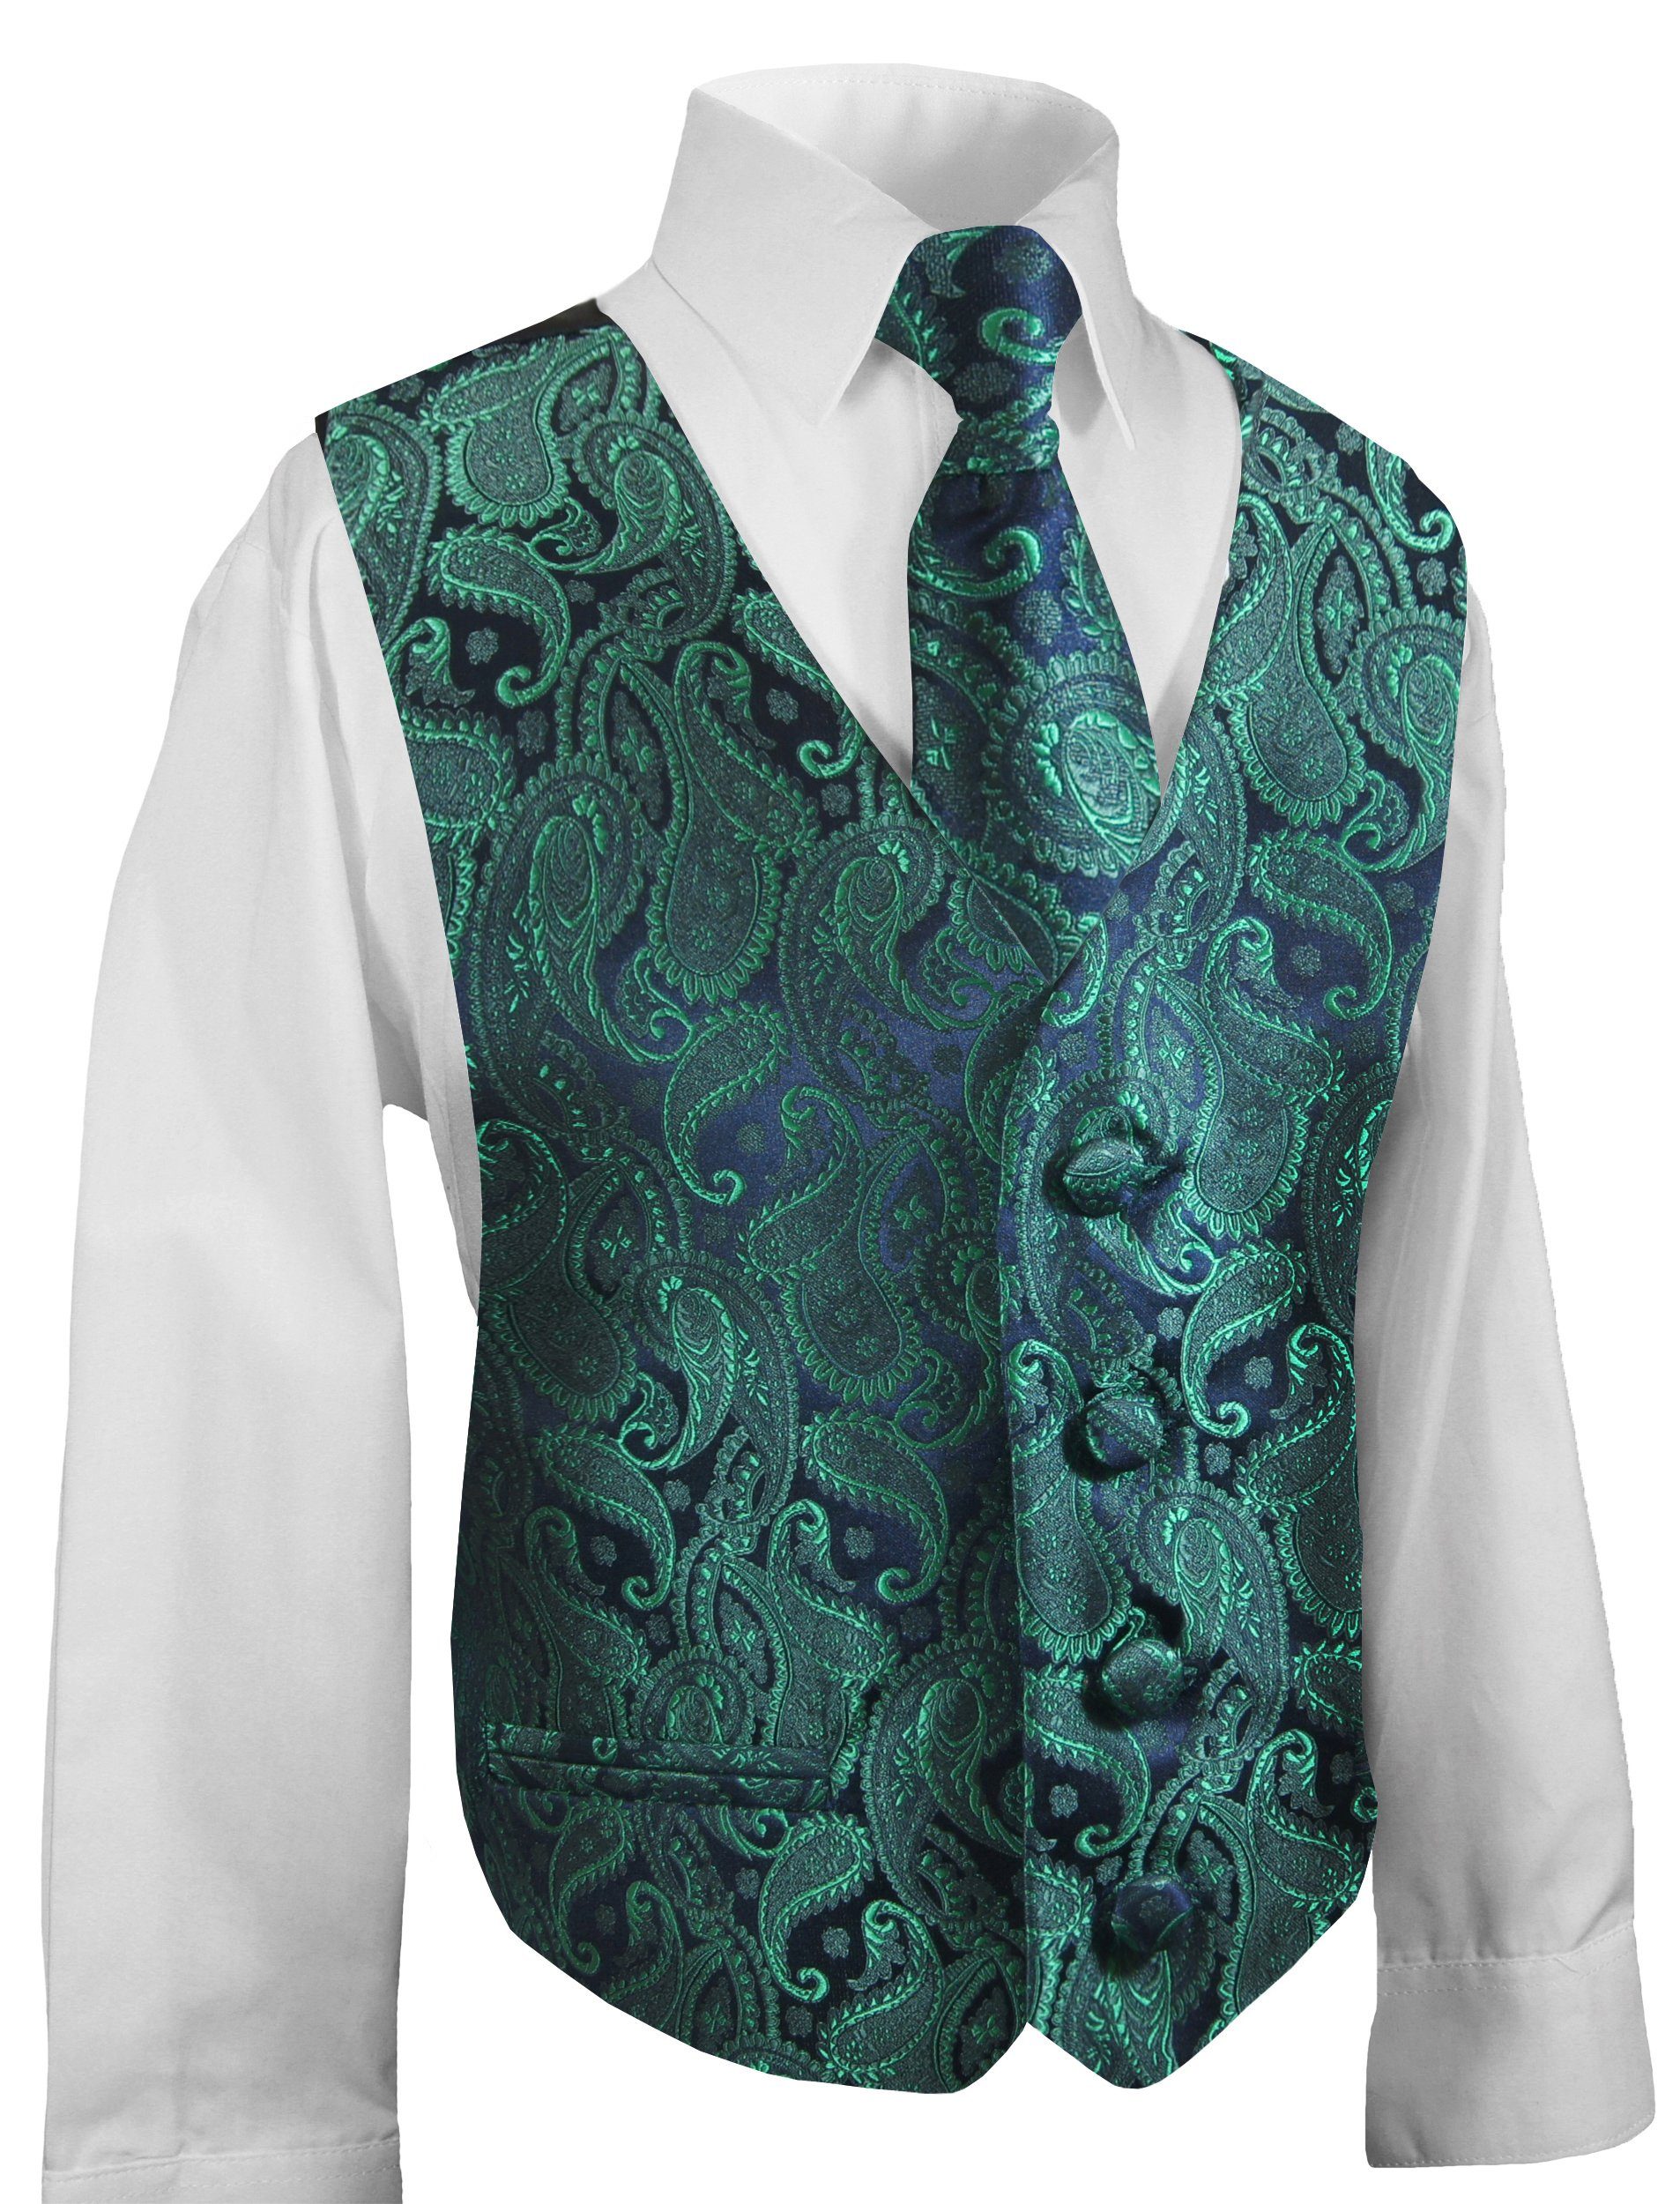 Paul Malone Anzugweste Festliche Kinderweste Jungenweste Kinder Anzug Weste (Set, 3-tlg., mit Weste, Hemd und Krawatte) grün KV14-Krawatte